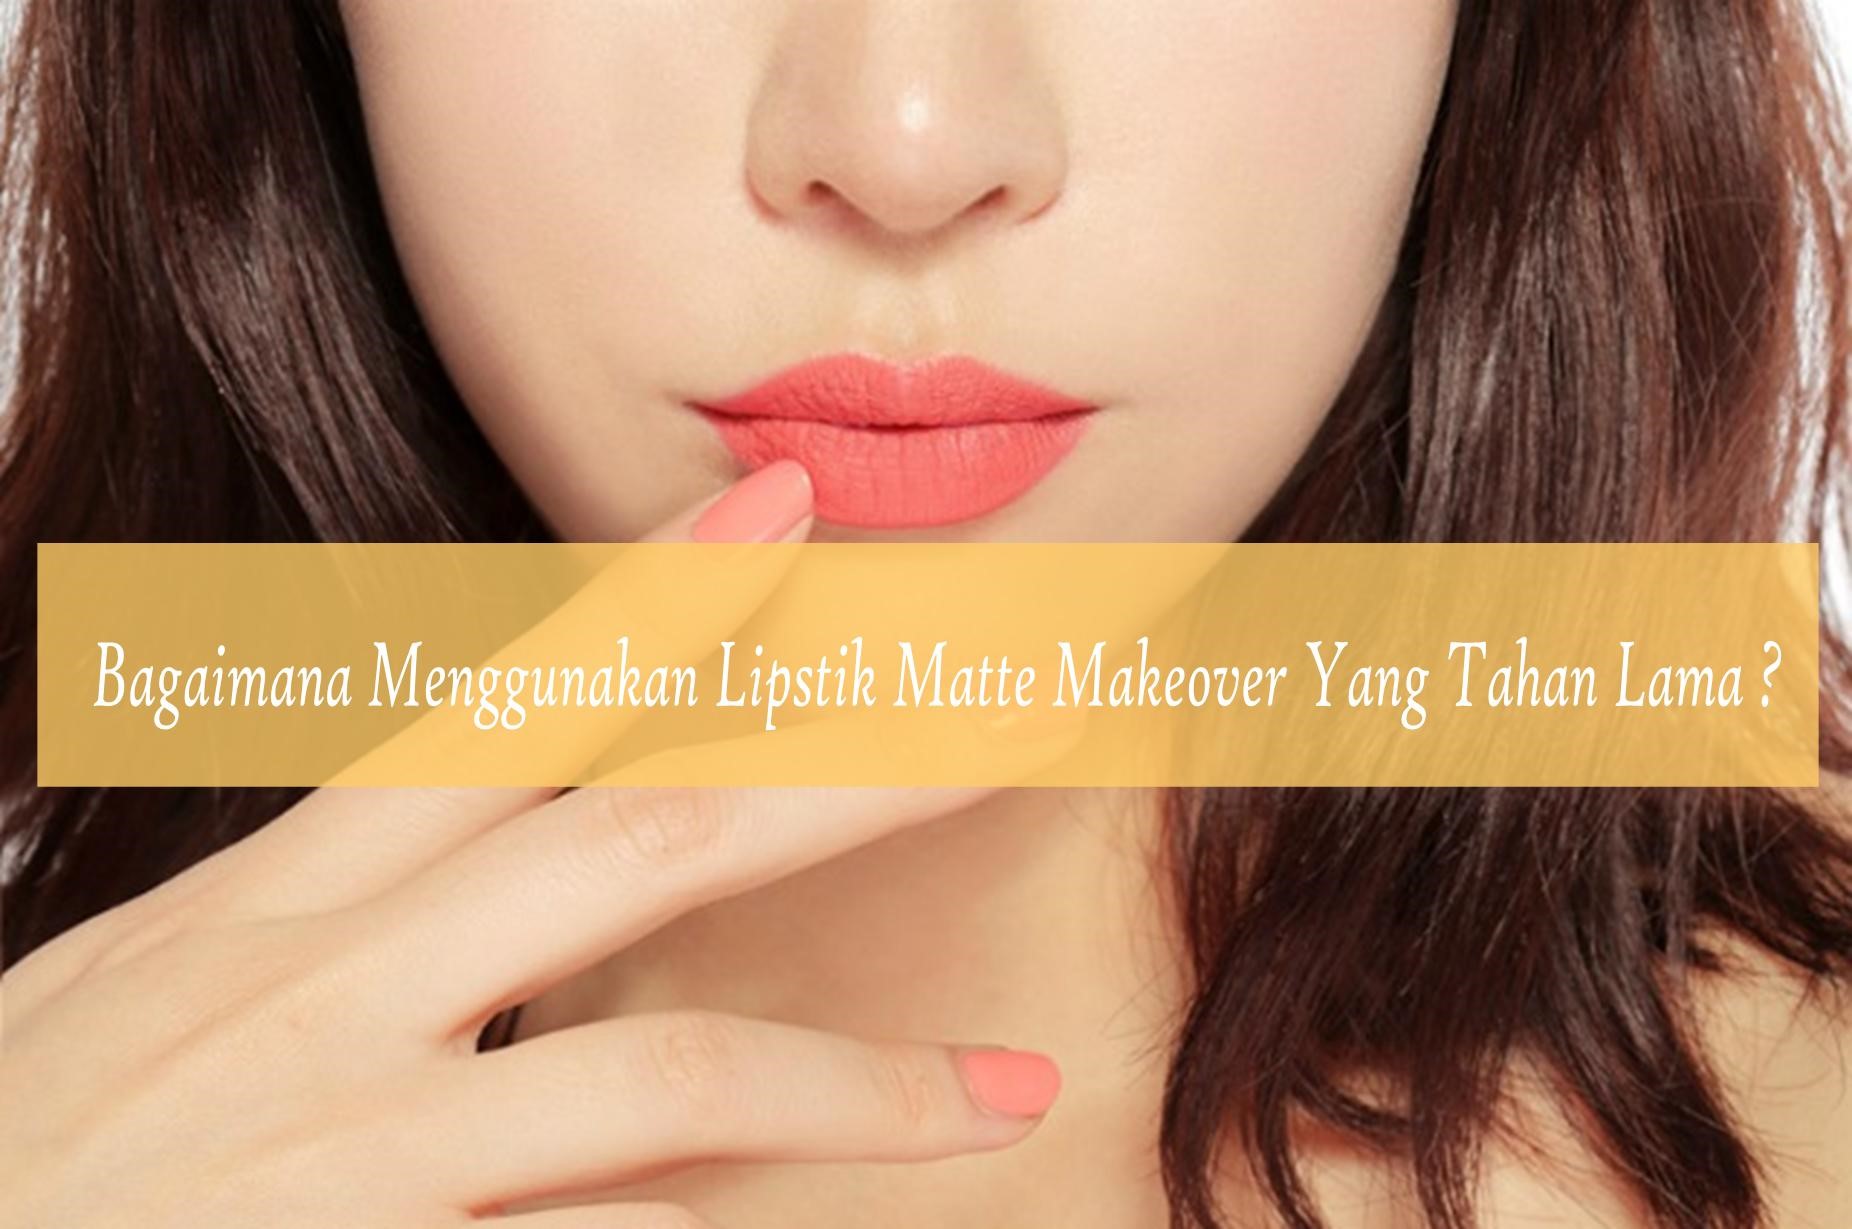 Bagaimana Cara Menggunakan Lipstik Matte Makeover Yang Tahan Lama